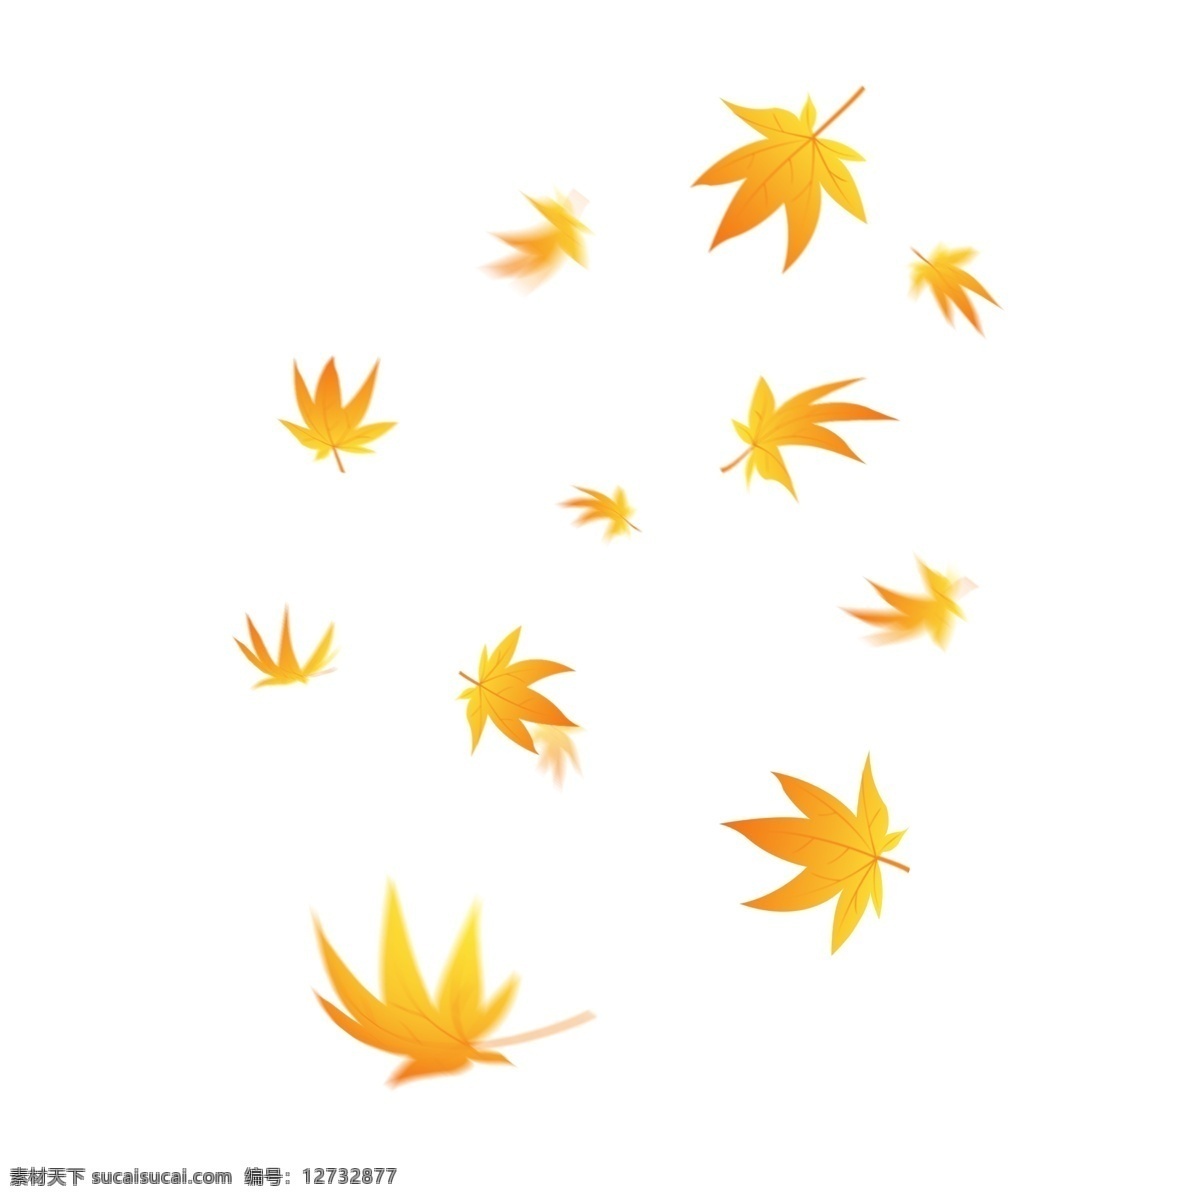 唯美 飘浮 飘落 枫叶 金色 树叶 商用 唯美浪漫 秋天 秋季 落叶 金色树叶 植物树叶 飘浮素材 飘落的树叶 飘浮树叶 叶子飘落